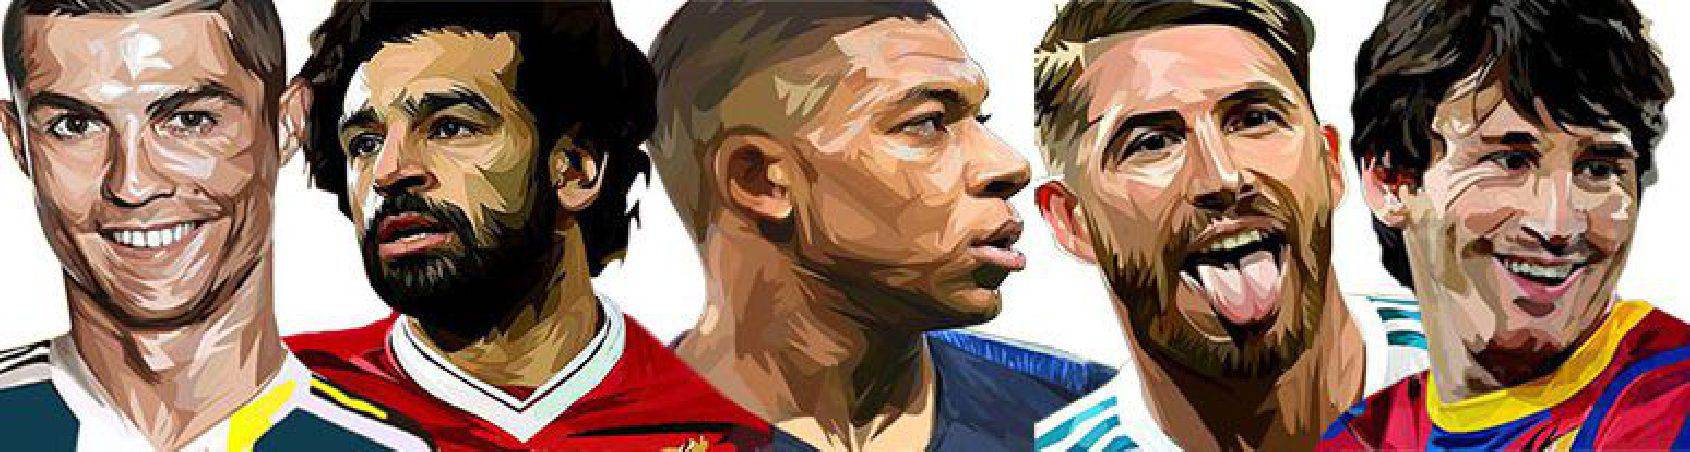 fútbol - jugadores | imágenes para decorar estilo Pop-Art